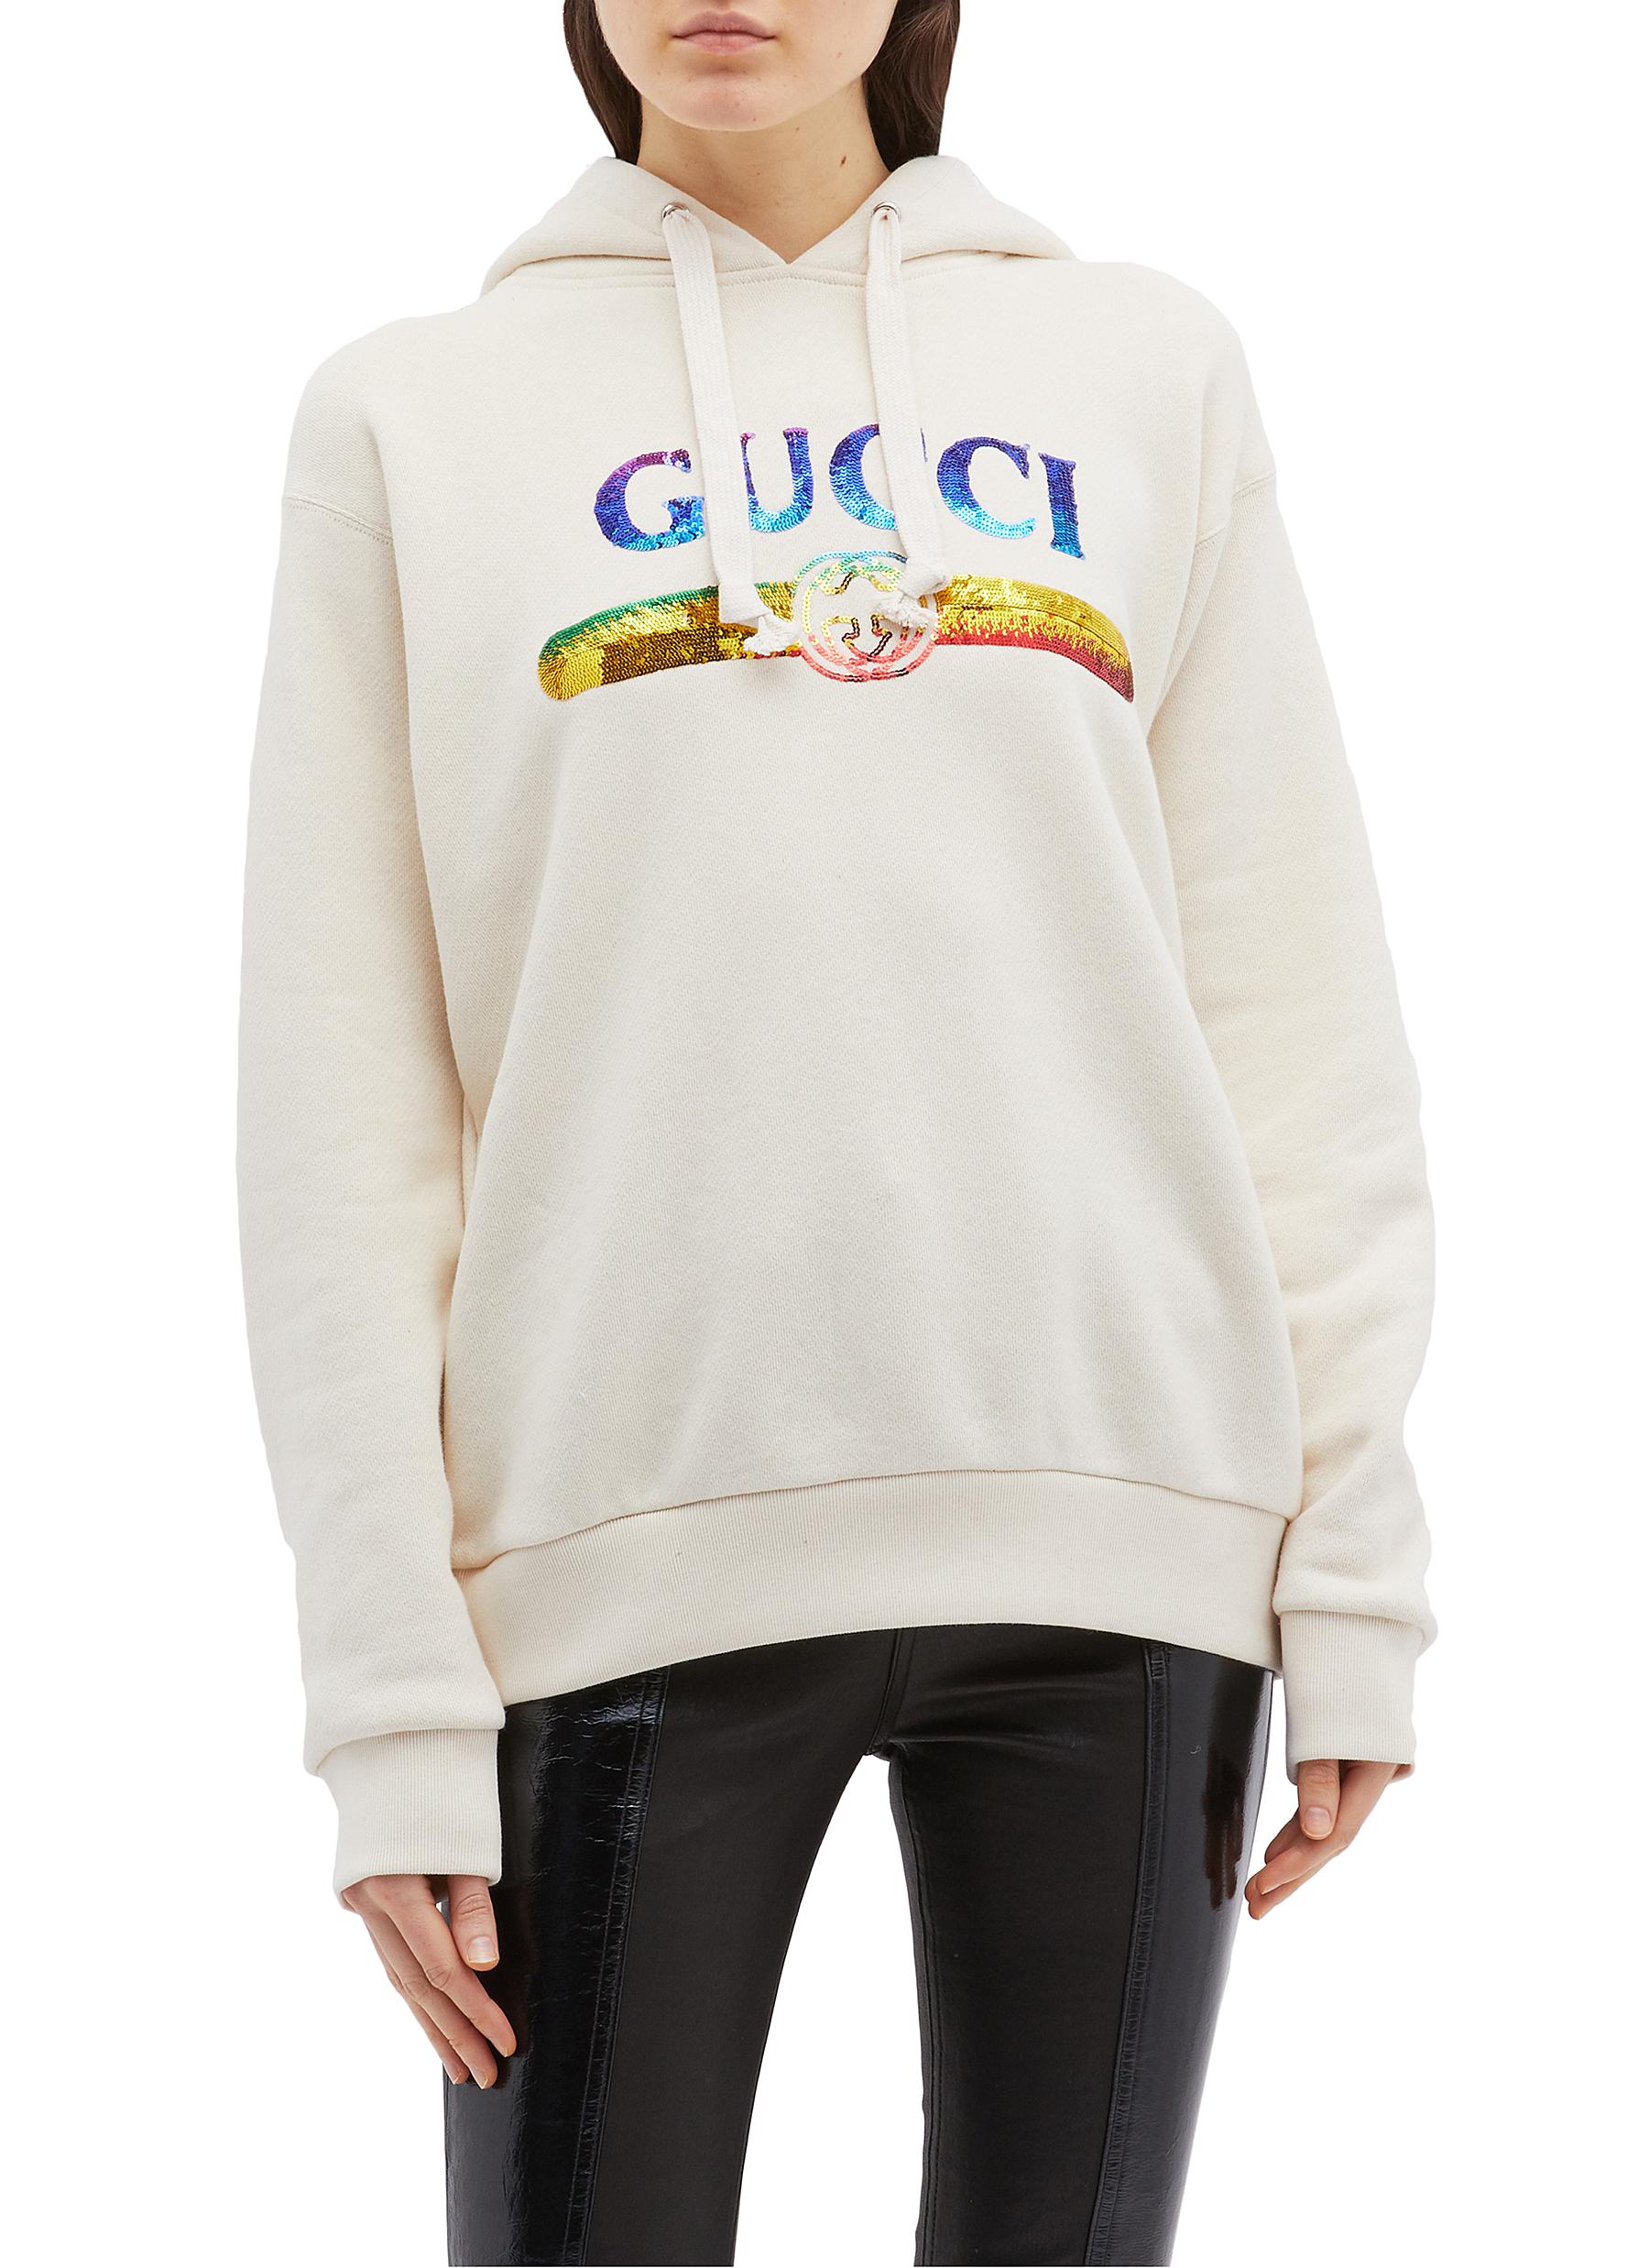 gucci hoodie rainbow